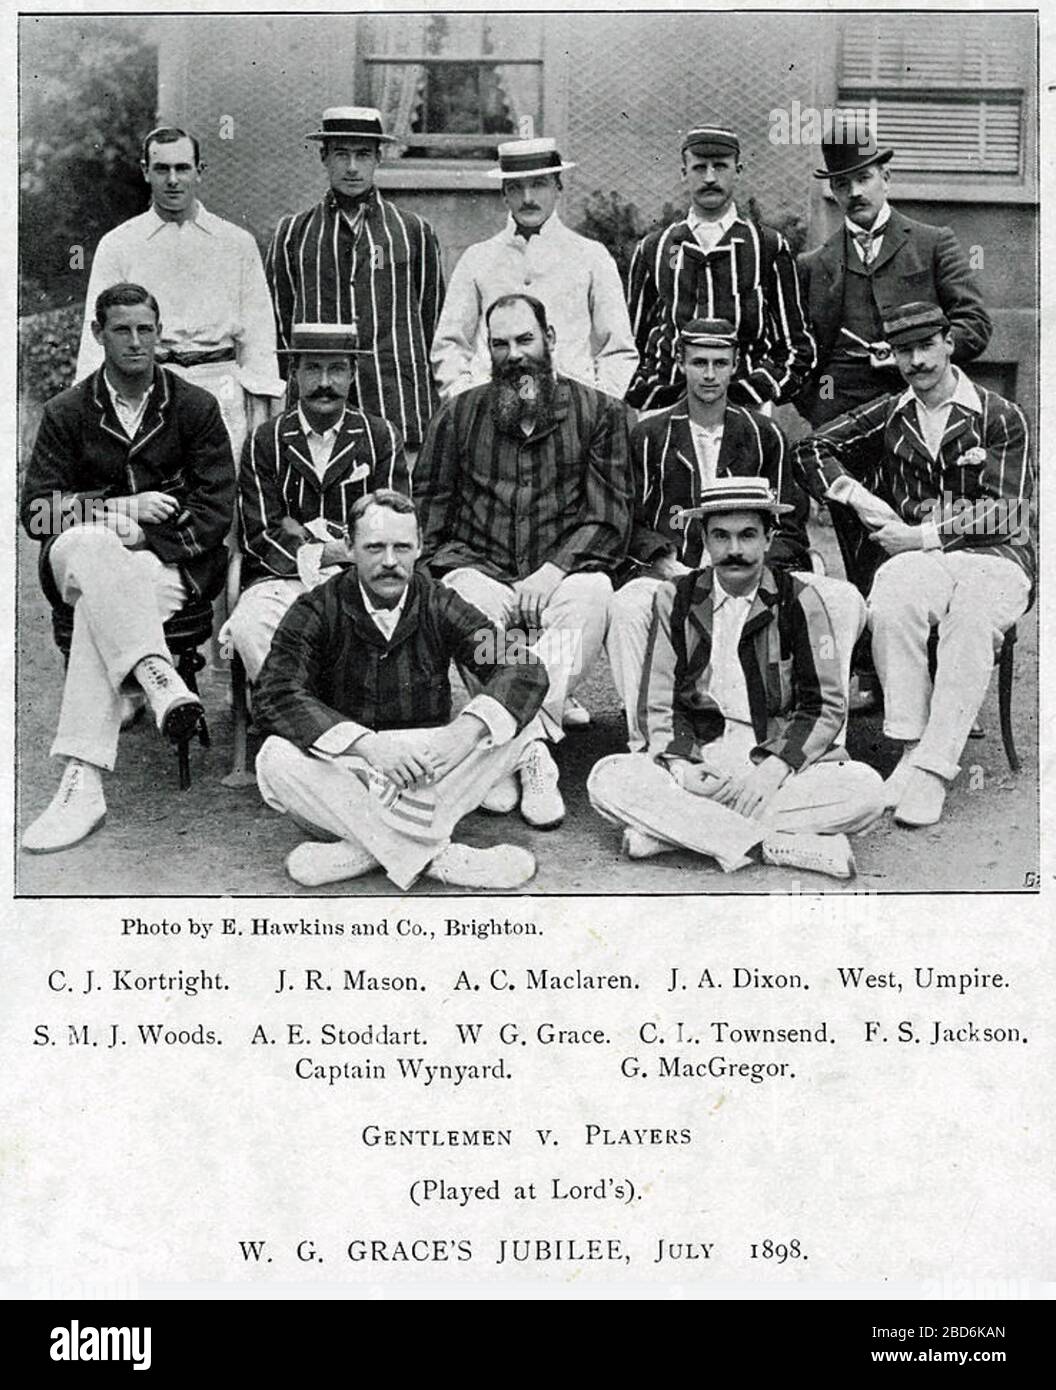 W.G.GRACE (1848-1915) englischer Amateur-Cricketspieler mit seinem Team im Gentlemen V Players Match von 1898, das an seinem 50. Geburtstag stattfand. Stockfoto